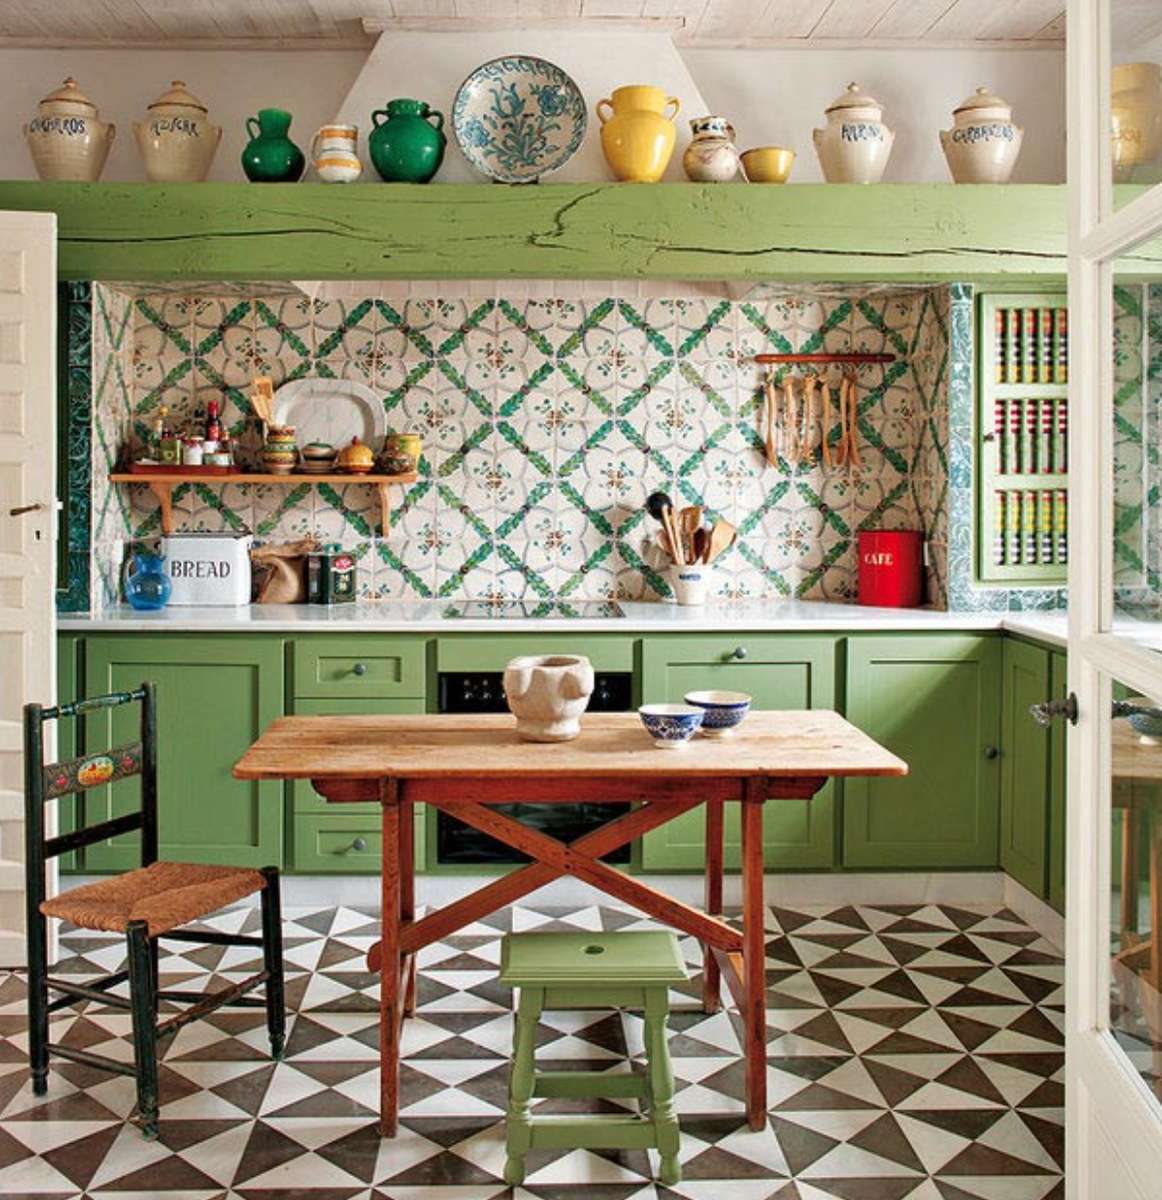 Вінтажна кухня в зеленому кольорі онлайн пазл